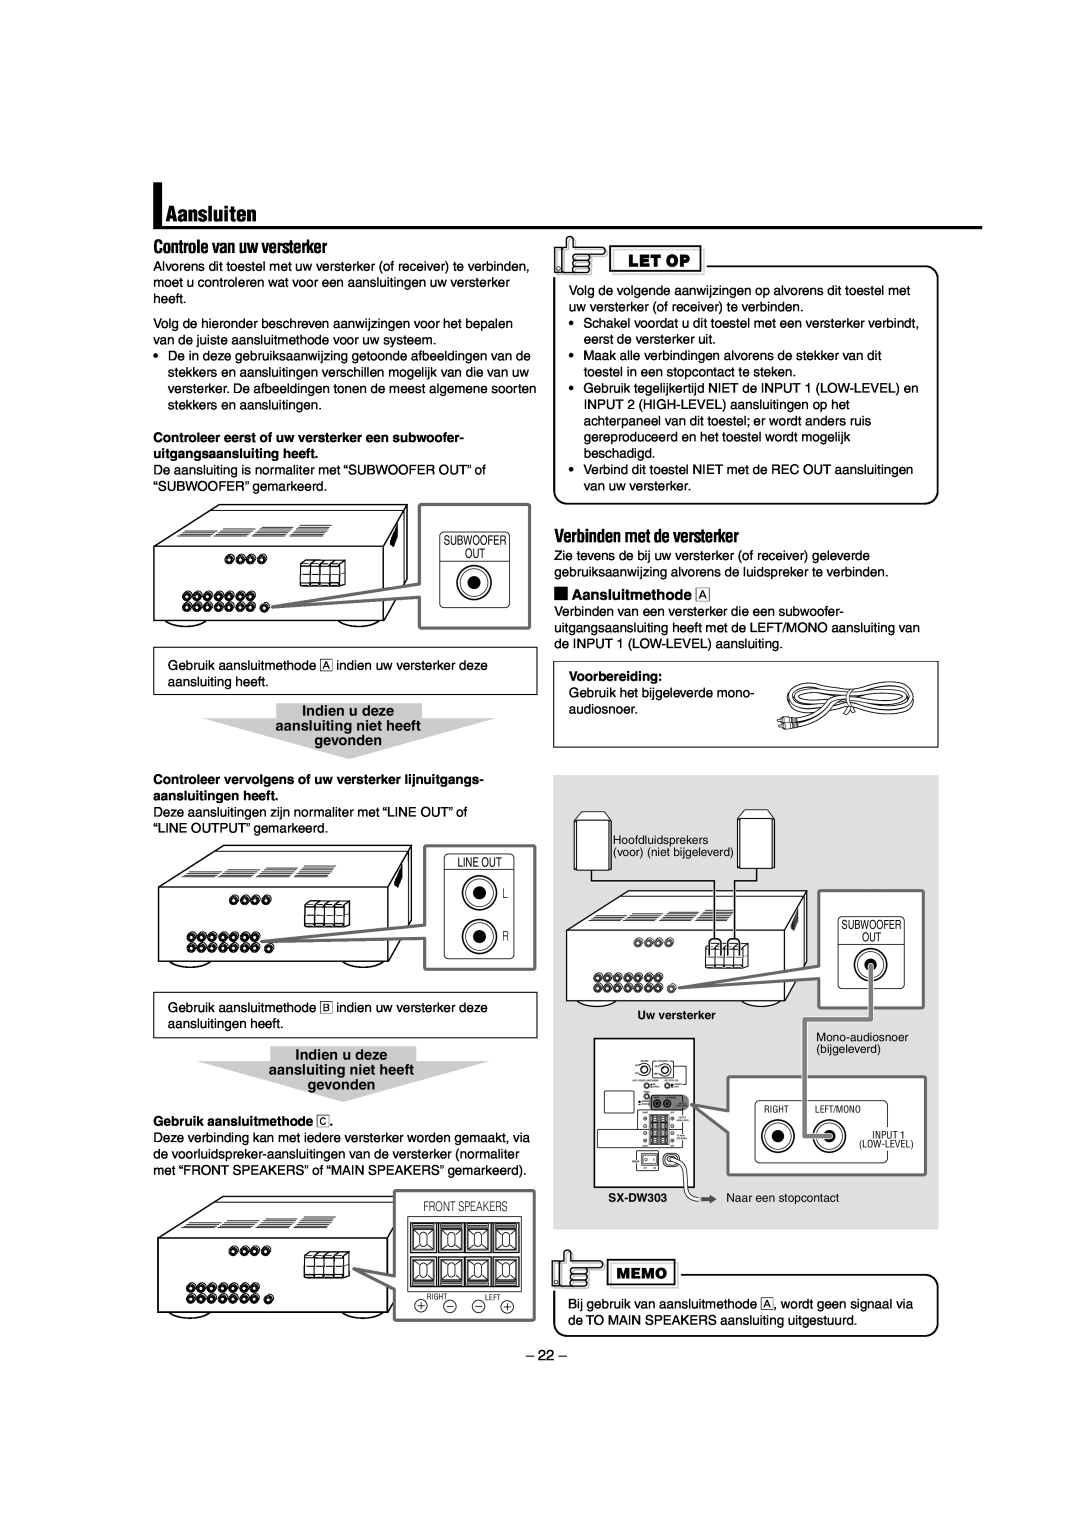 JVC SW-DW303 manual Aansluiten, Controle van uw versterker, Verbinden met de versterker, Aansluitmethode Å 